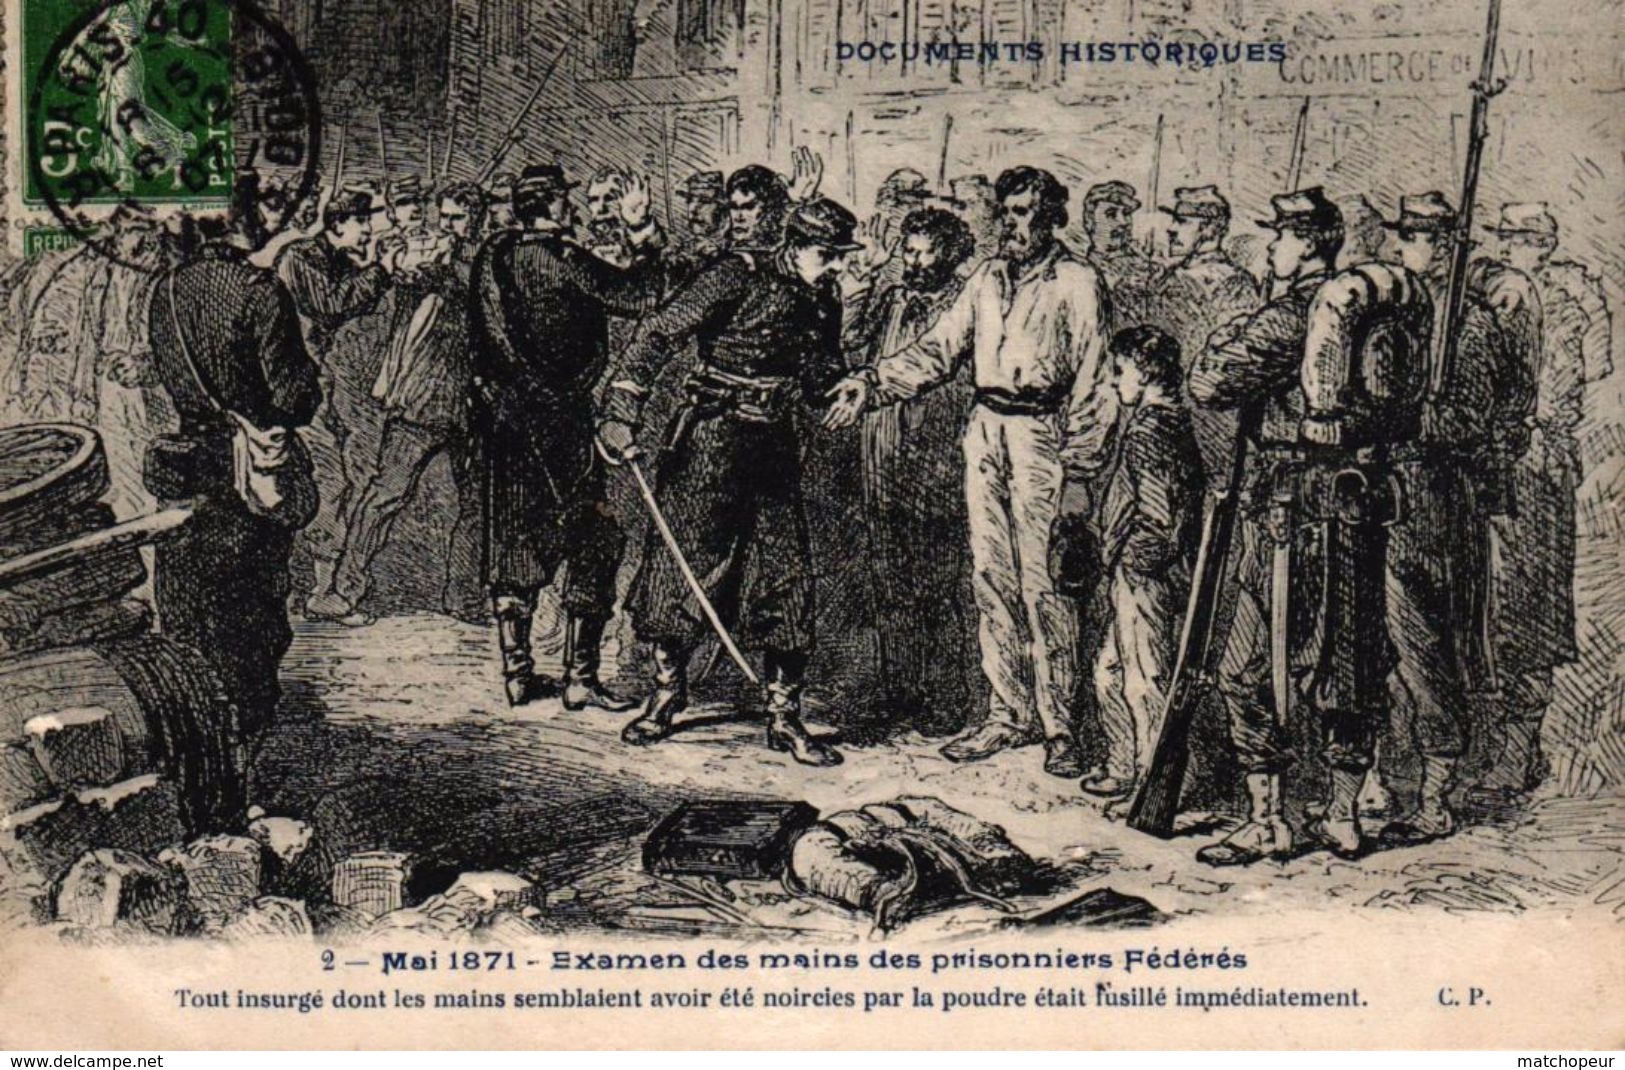 CPA DOCUMENTS HISTORIQUES - 2 MAI 1871 - EXAMEN DES MAINS DES PRISONNIERS FEDERES - History